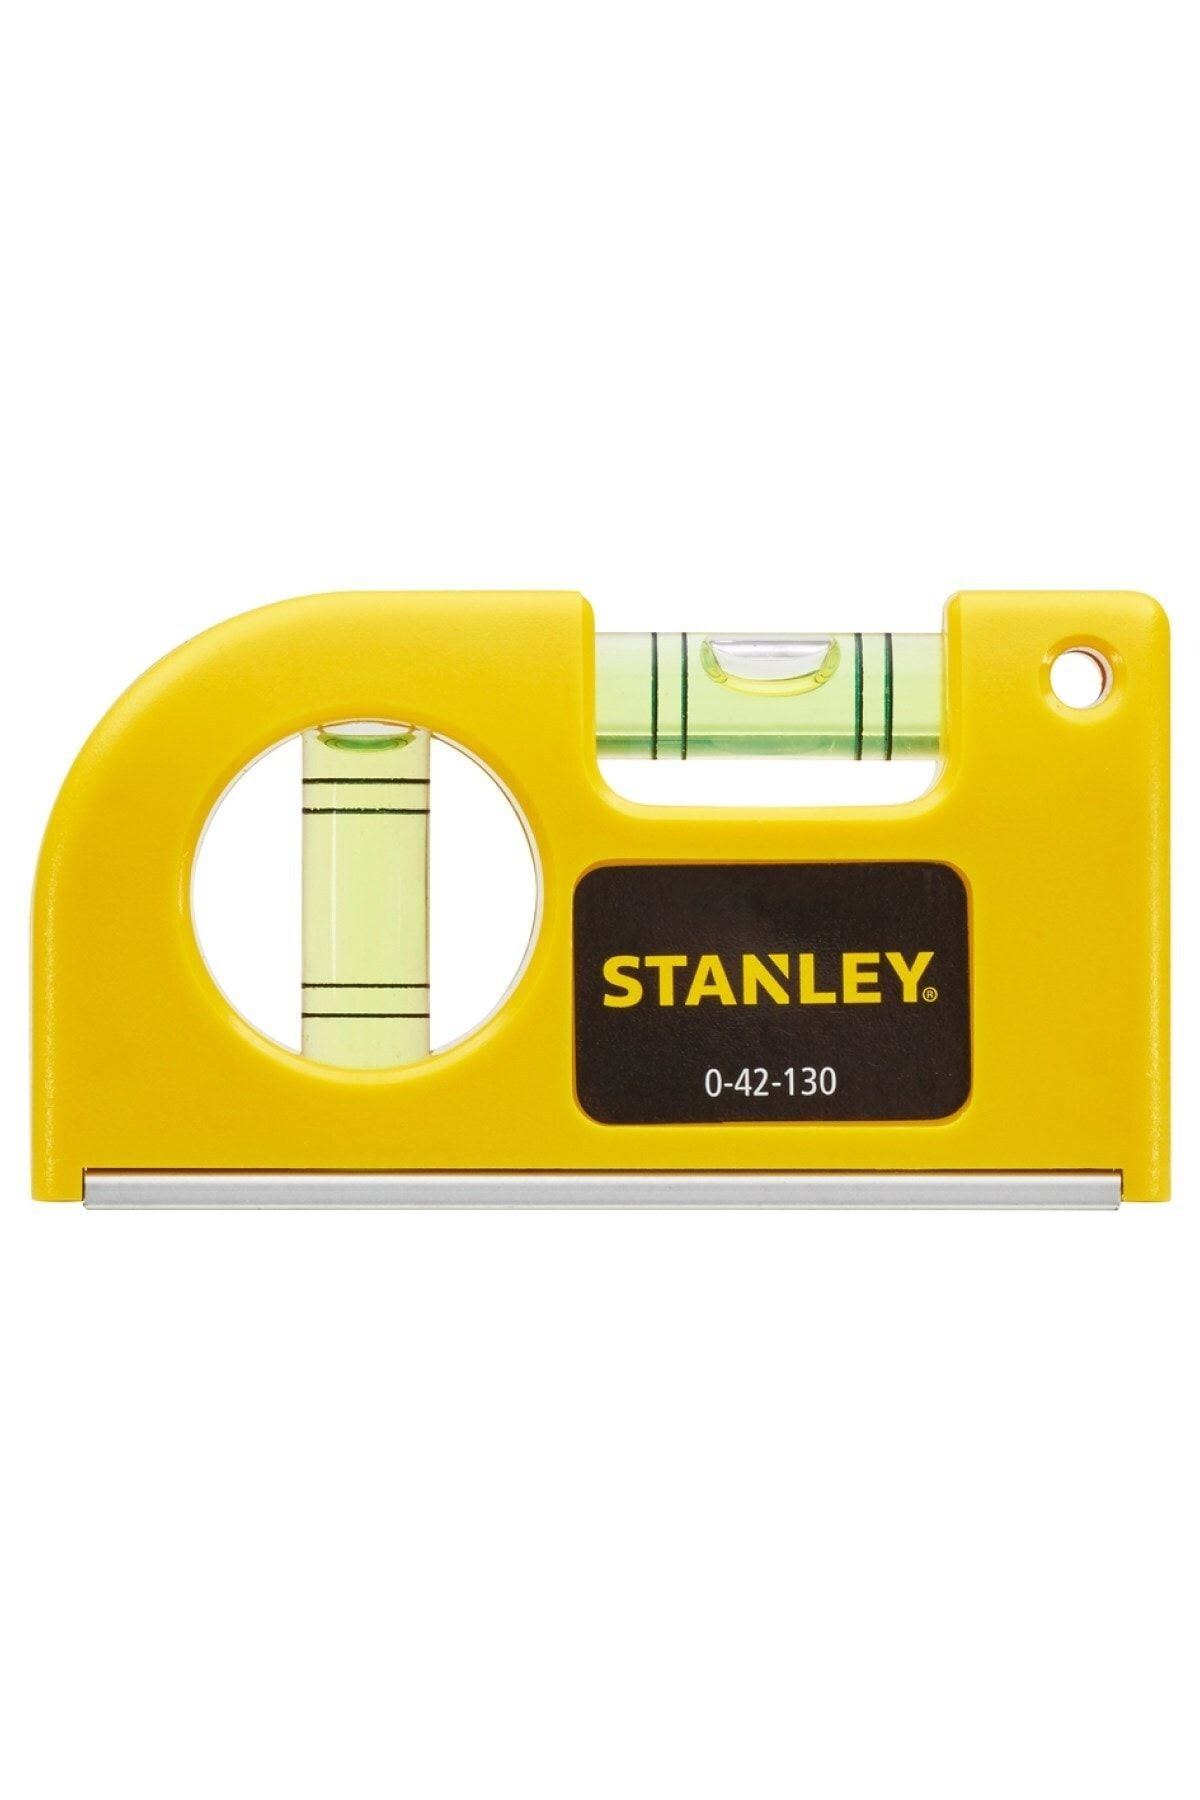 Stanley Su Terazisi Mini Cep Tipi St042130